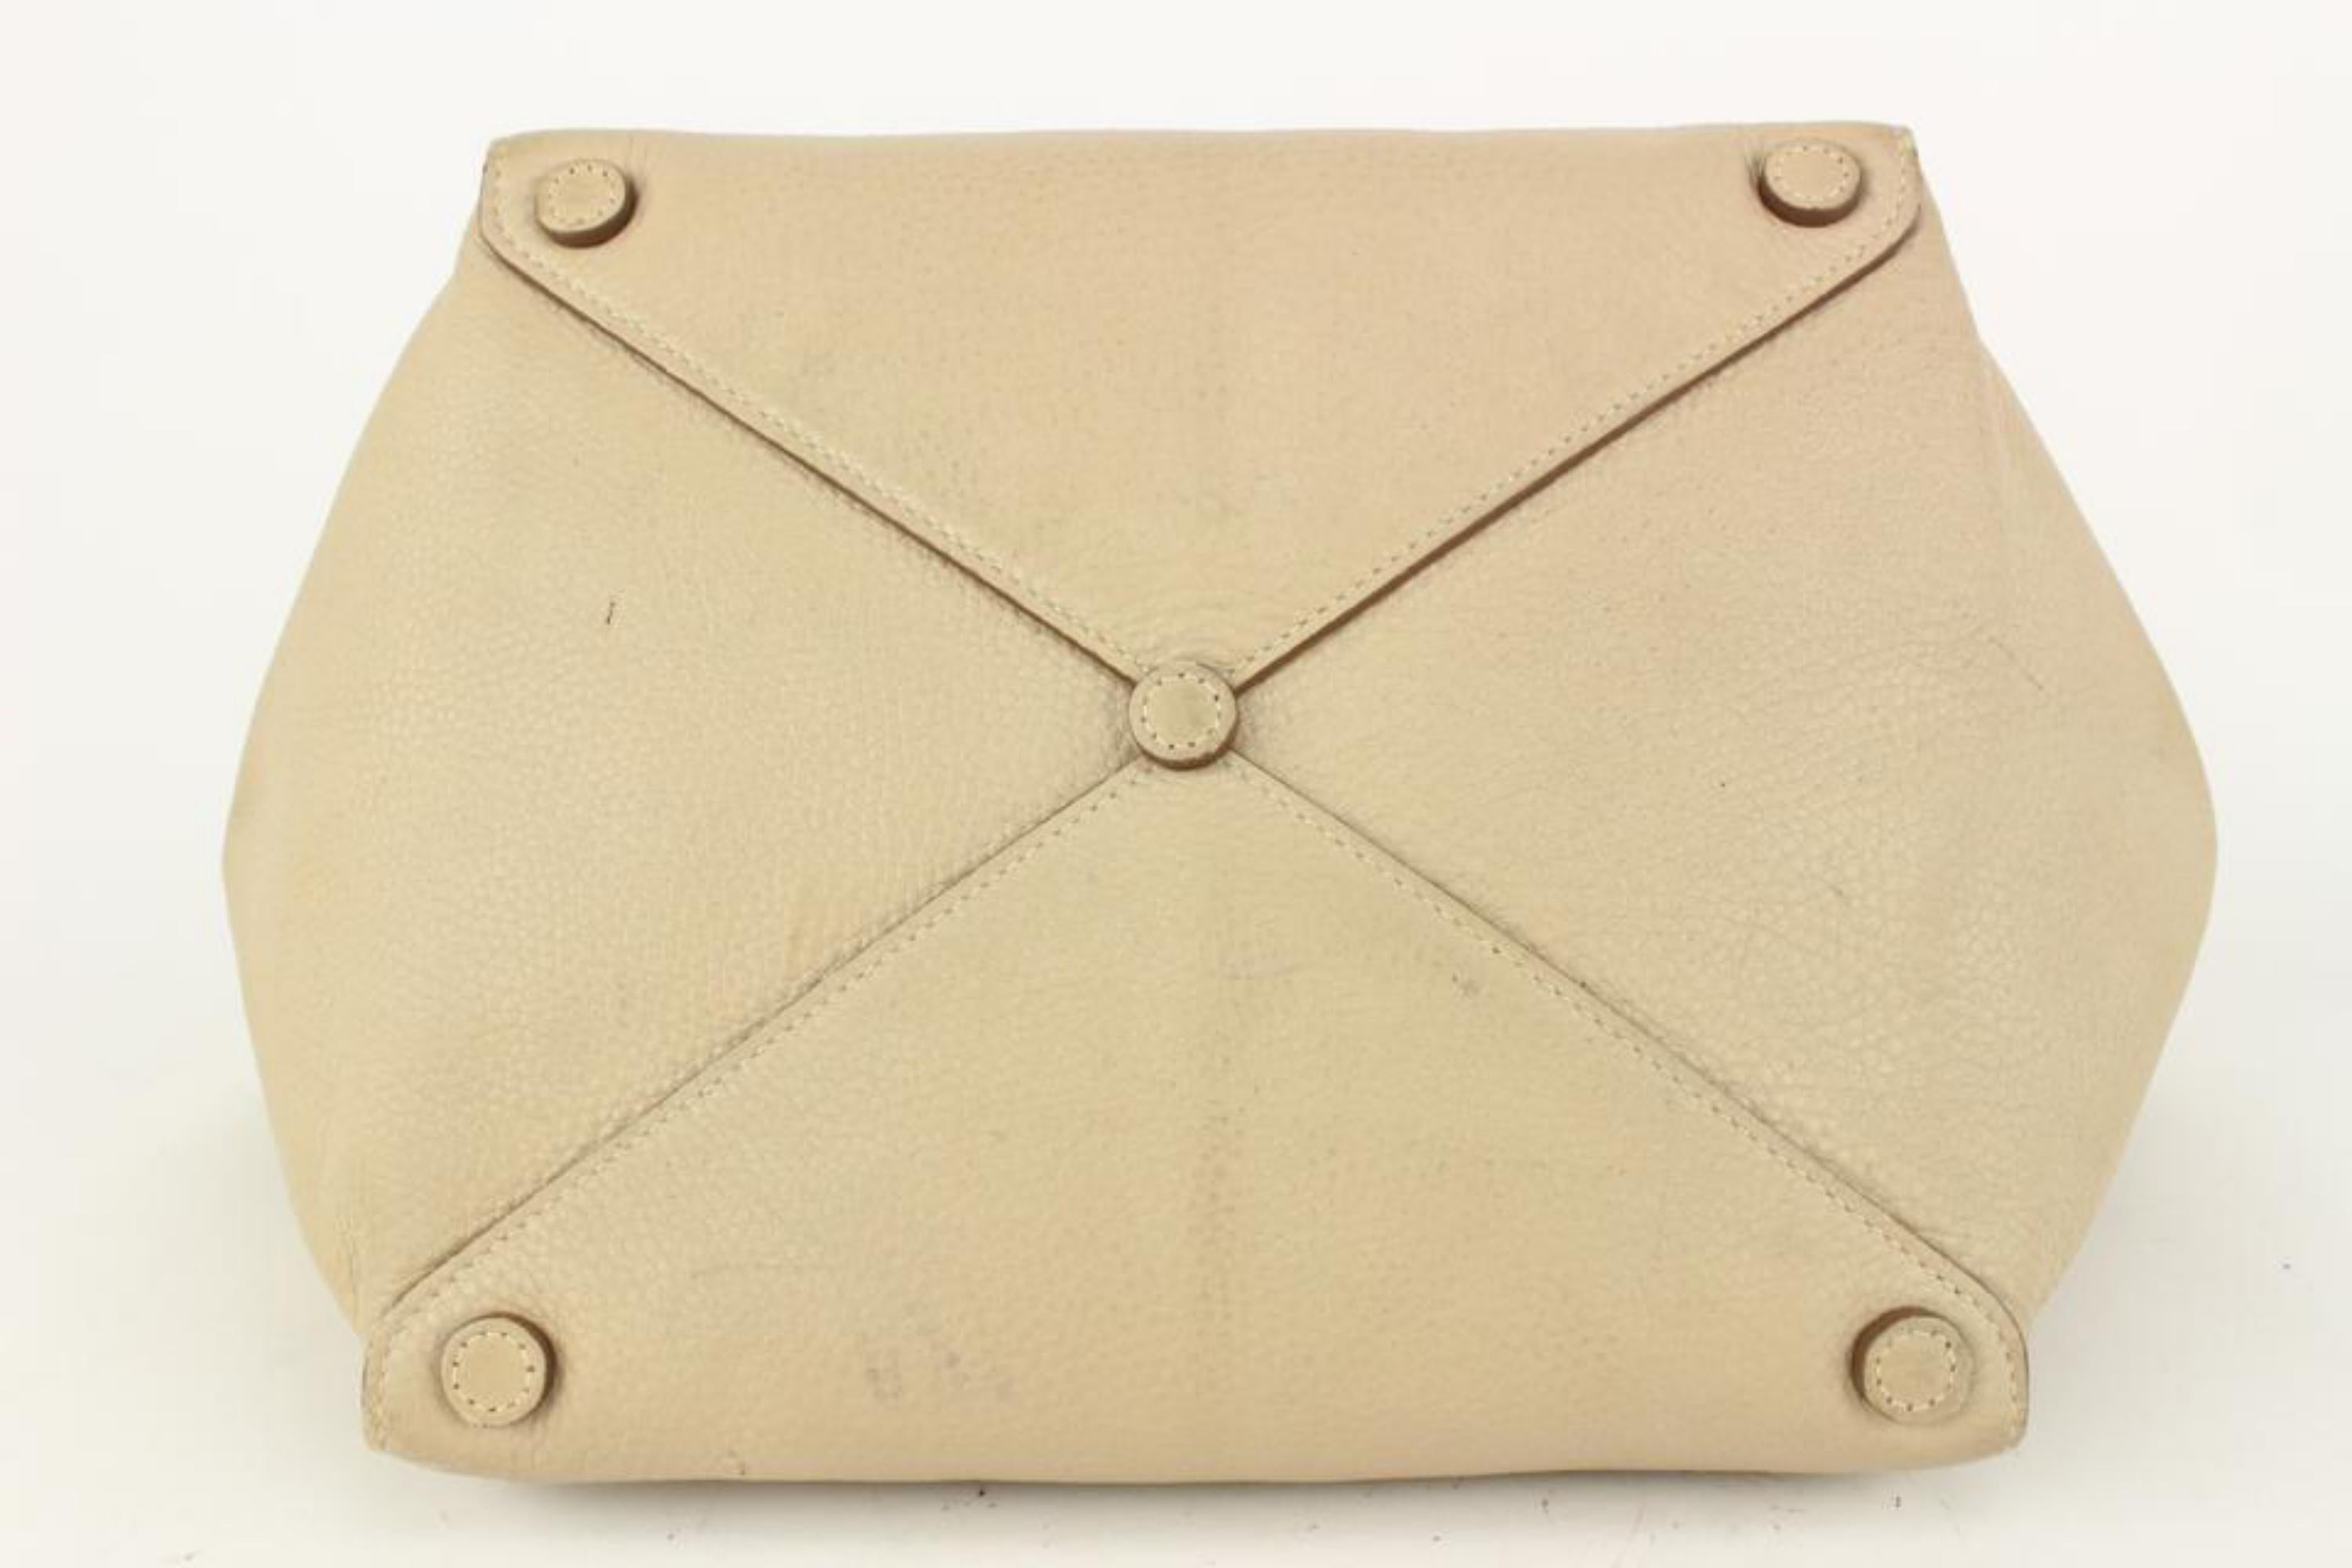 Prada Beige Daino Vitello Leather Shopper Tote Bag 1PR617a In Good Condition For Sale In Dix hills, NY